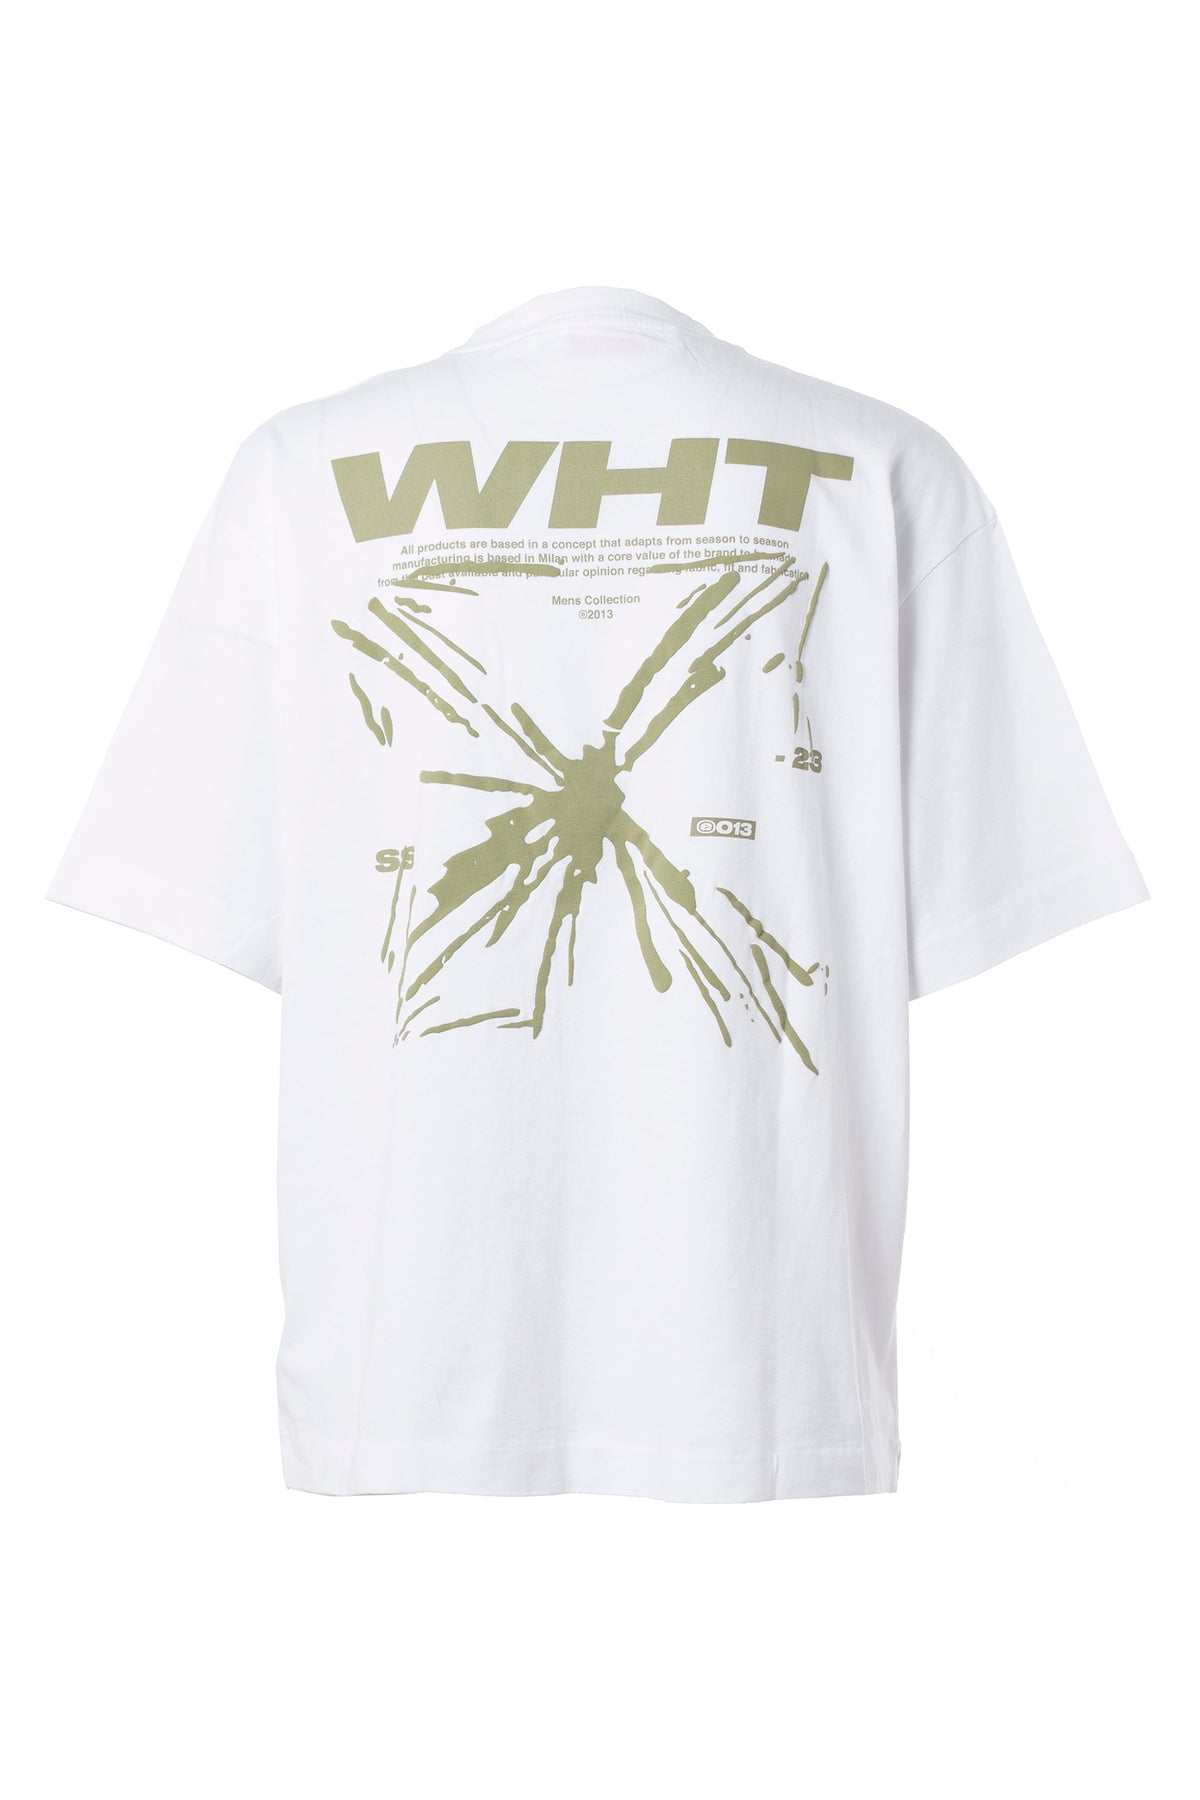 限定品国産 OFF-WHITE - off-white シンガポール限定Tシャツ オフ ...